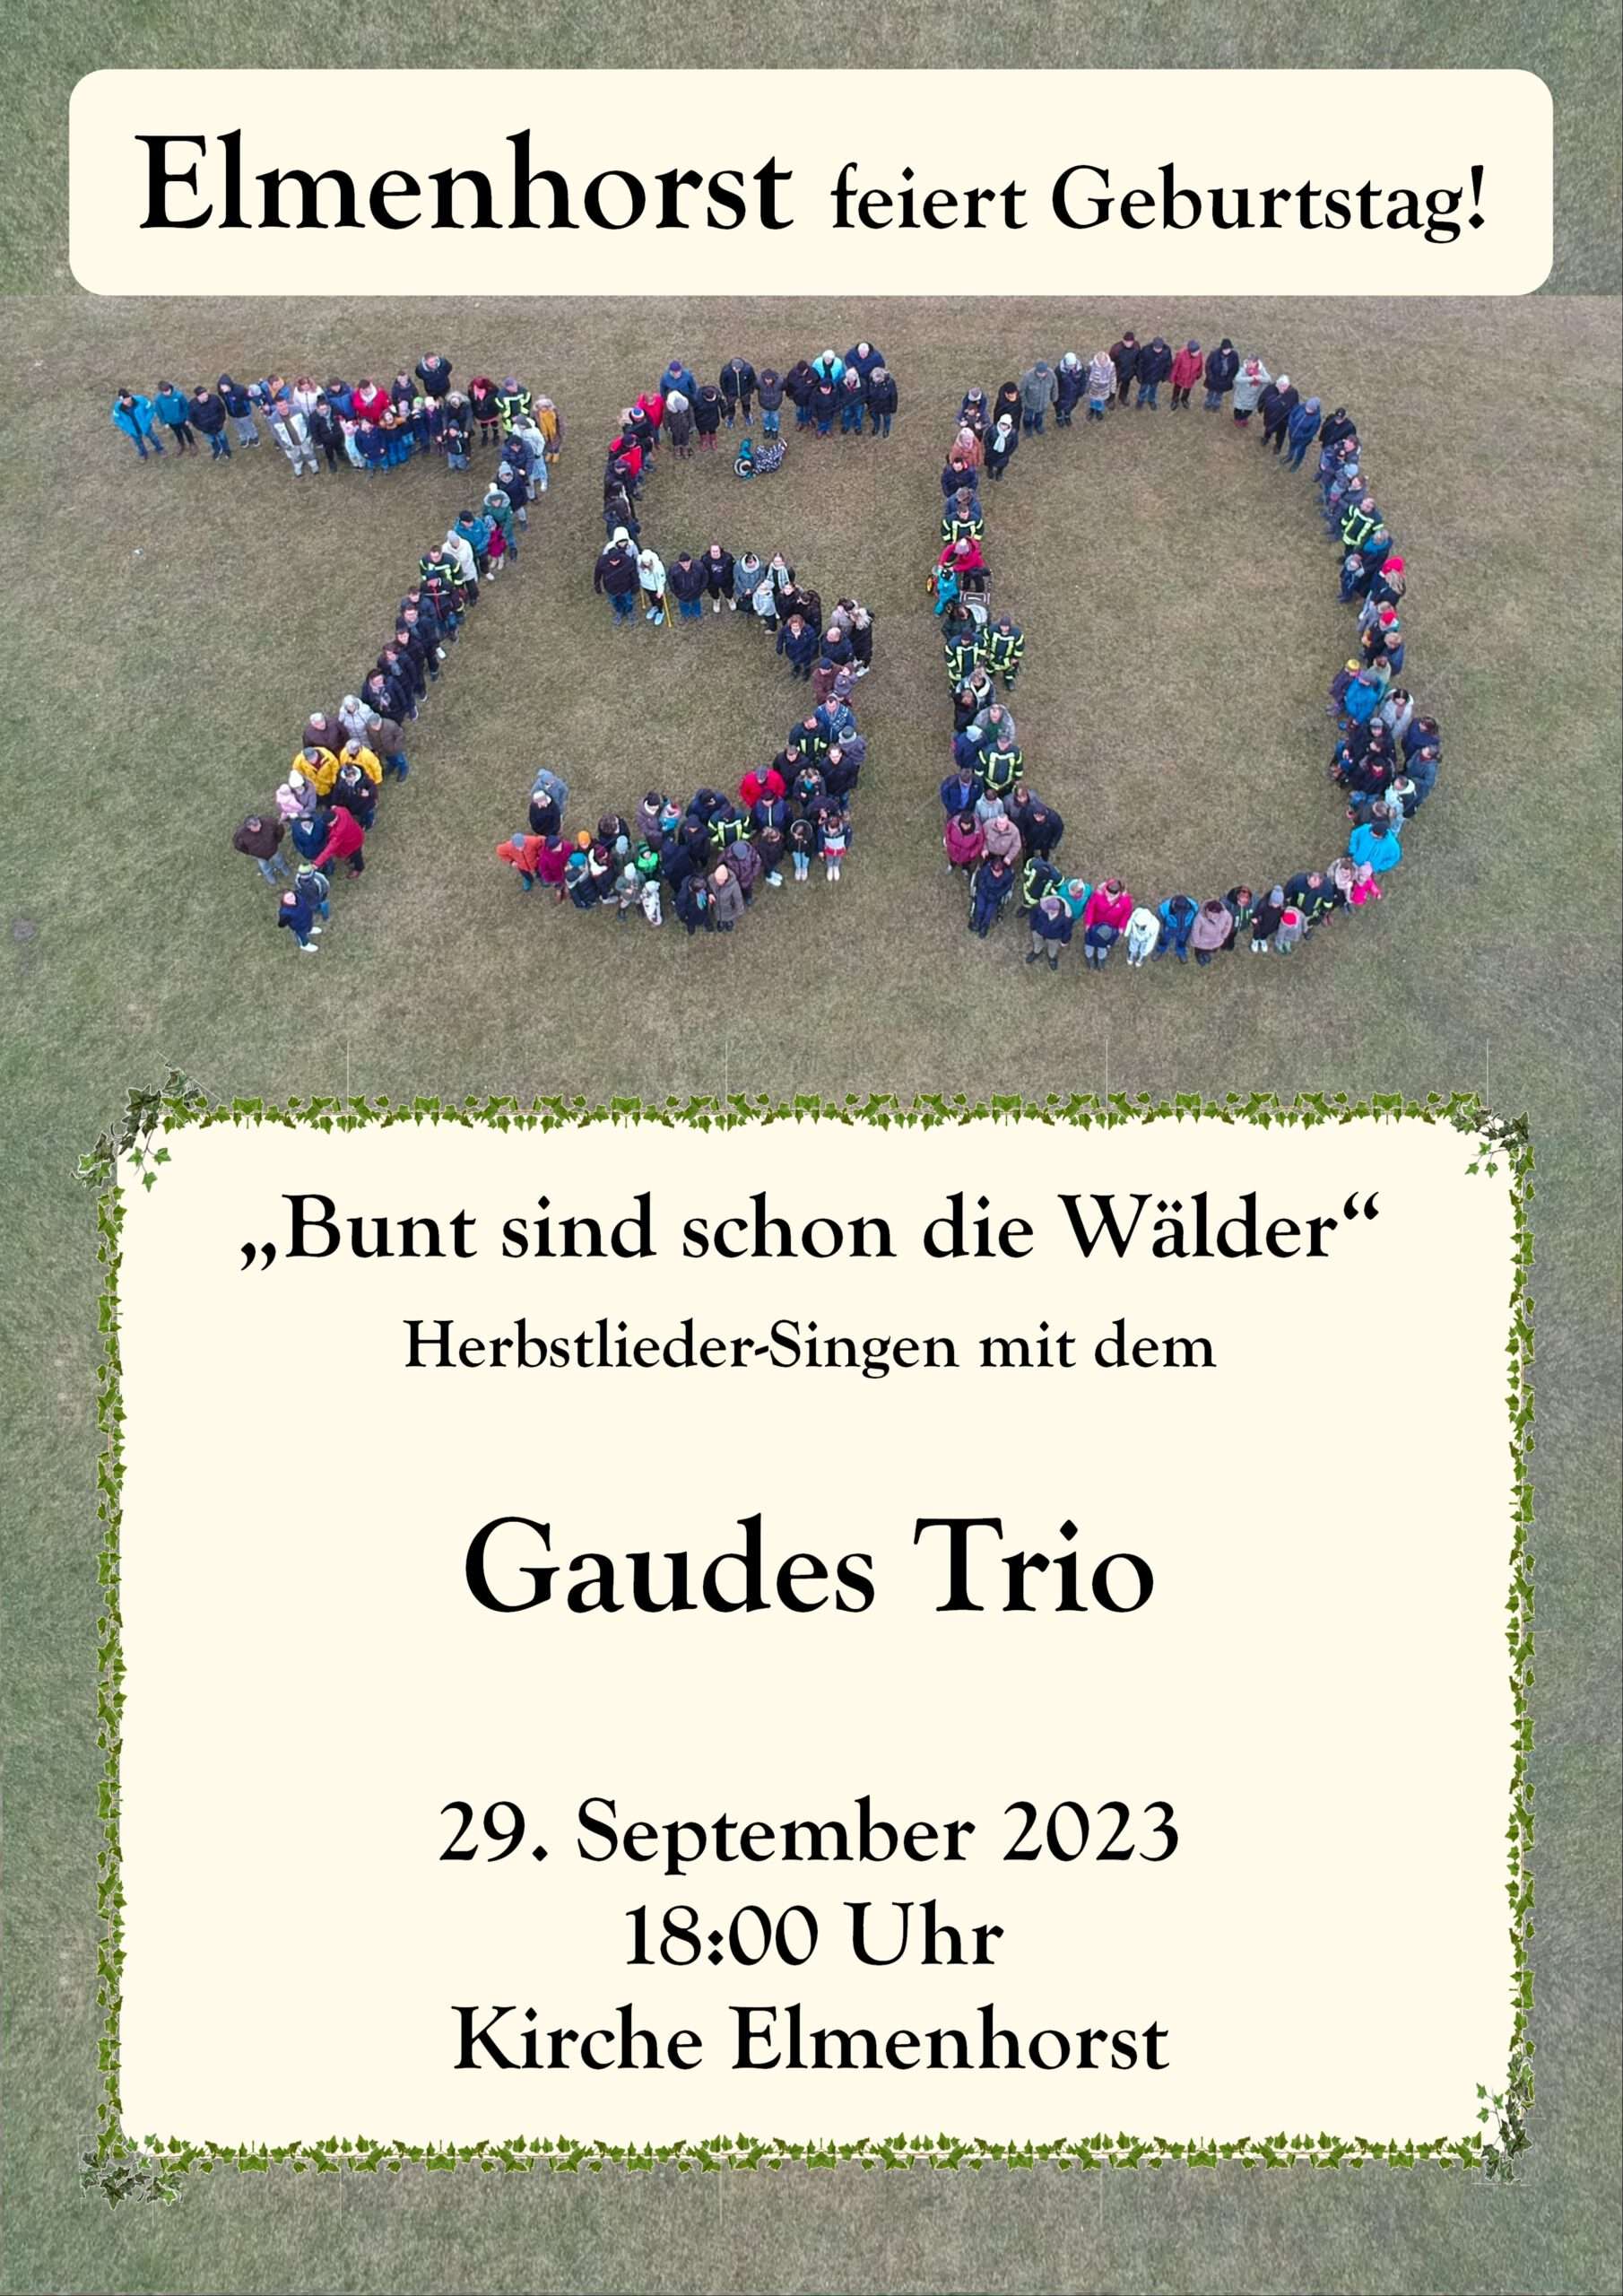 Herbstlieder-Singen mit dem

Gaudes Trio

29. September 2023
18:00 Uhr
Kirche Elmenhorst